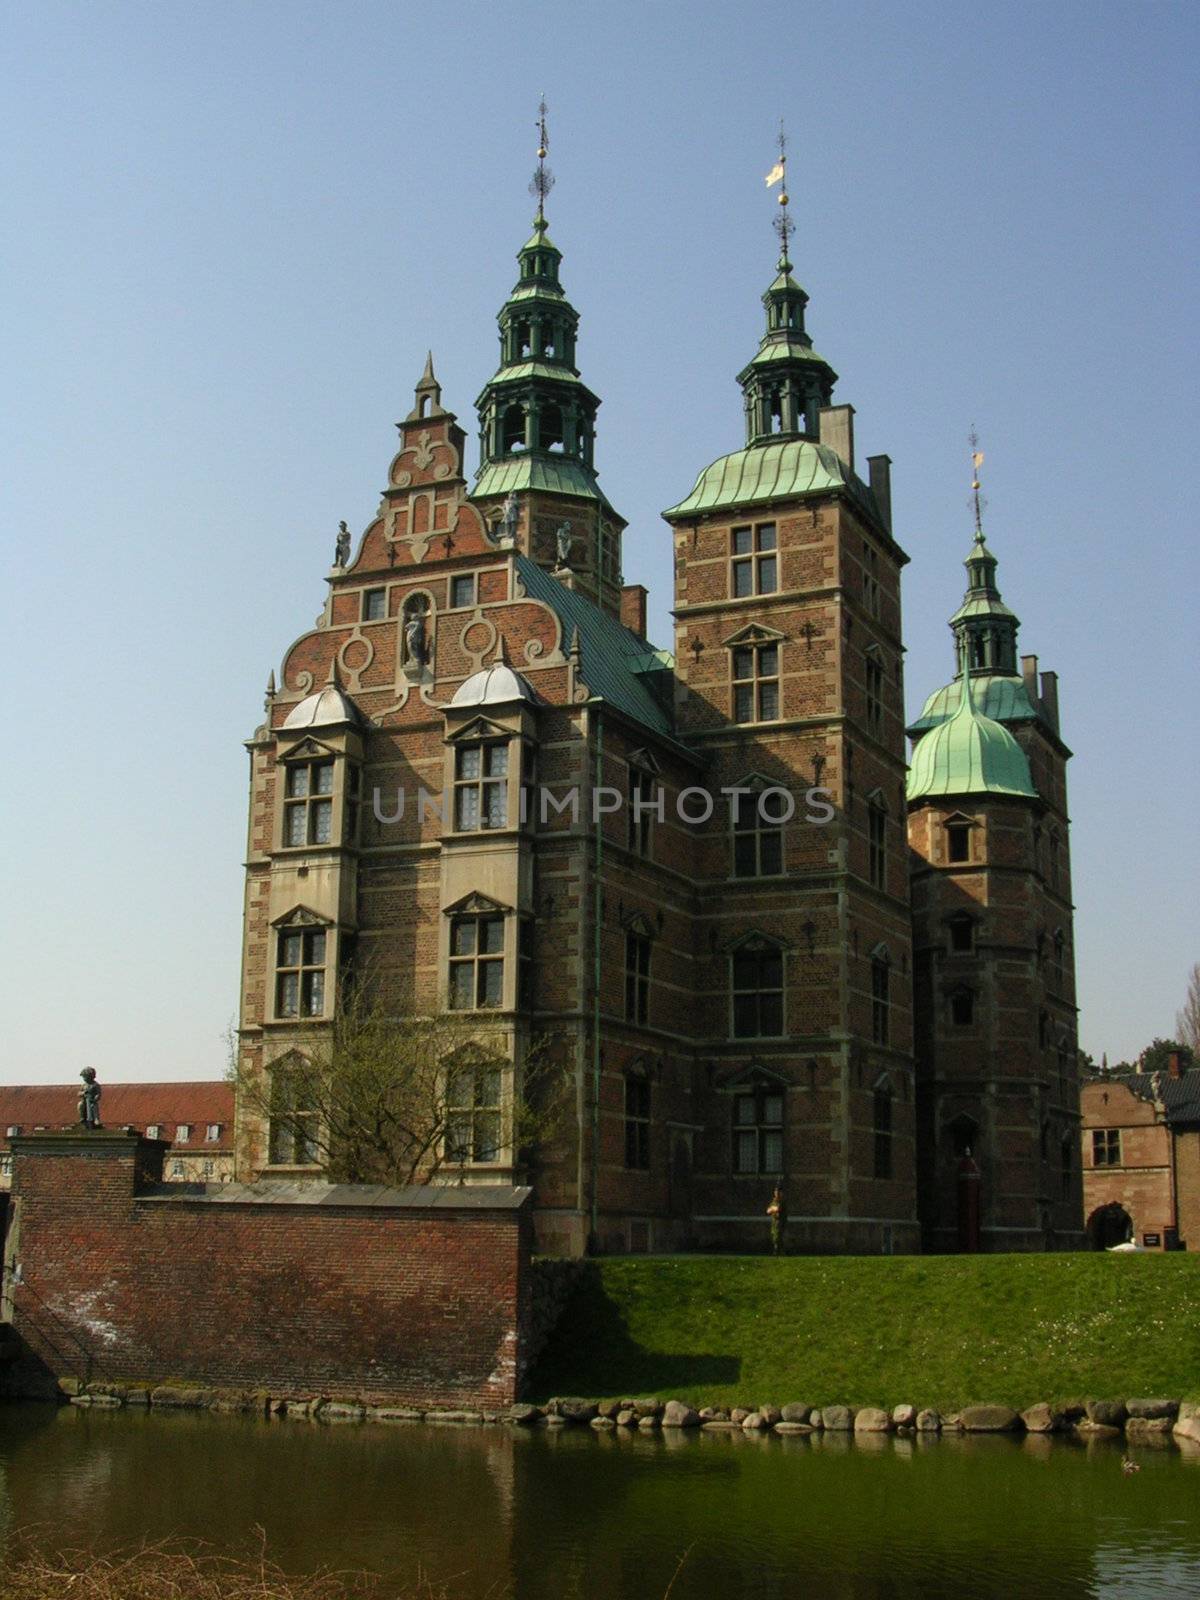 Rosenborg Castle in Copenhagen Denmark